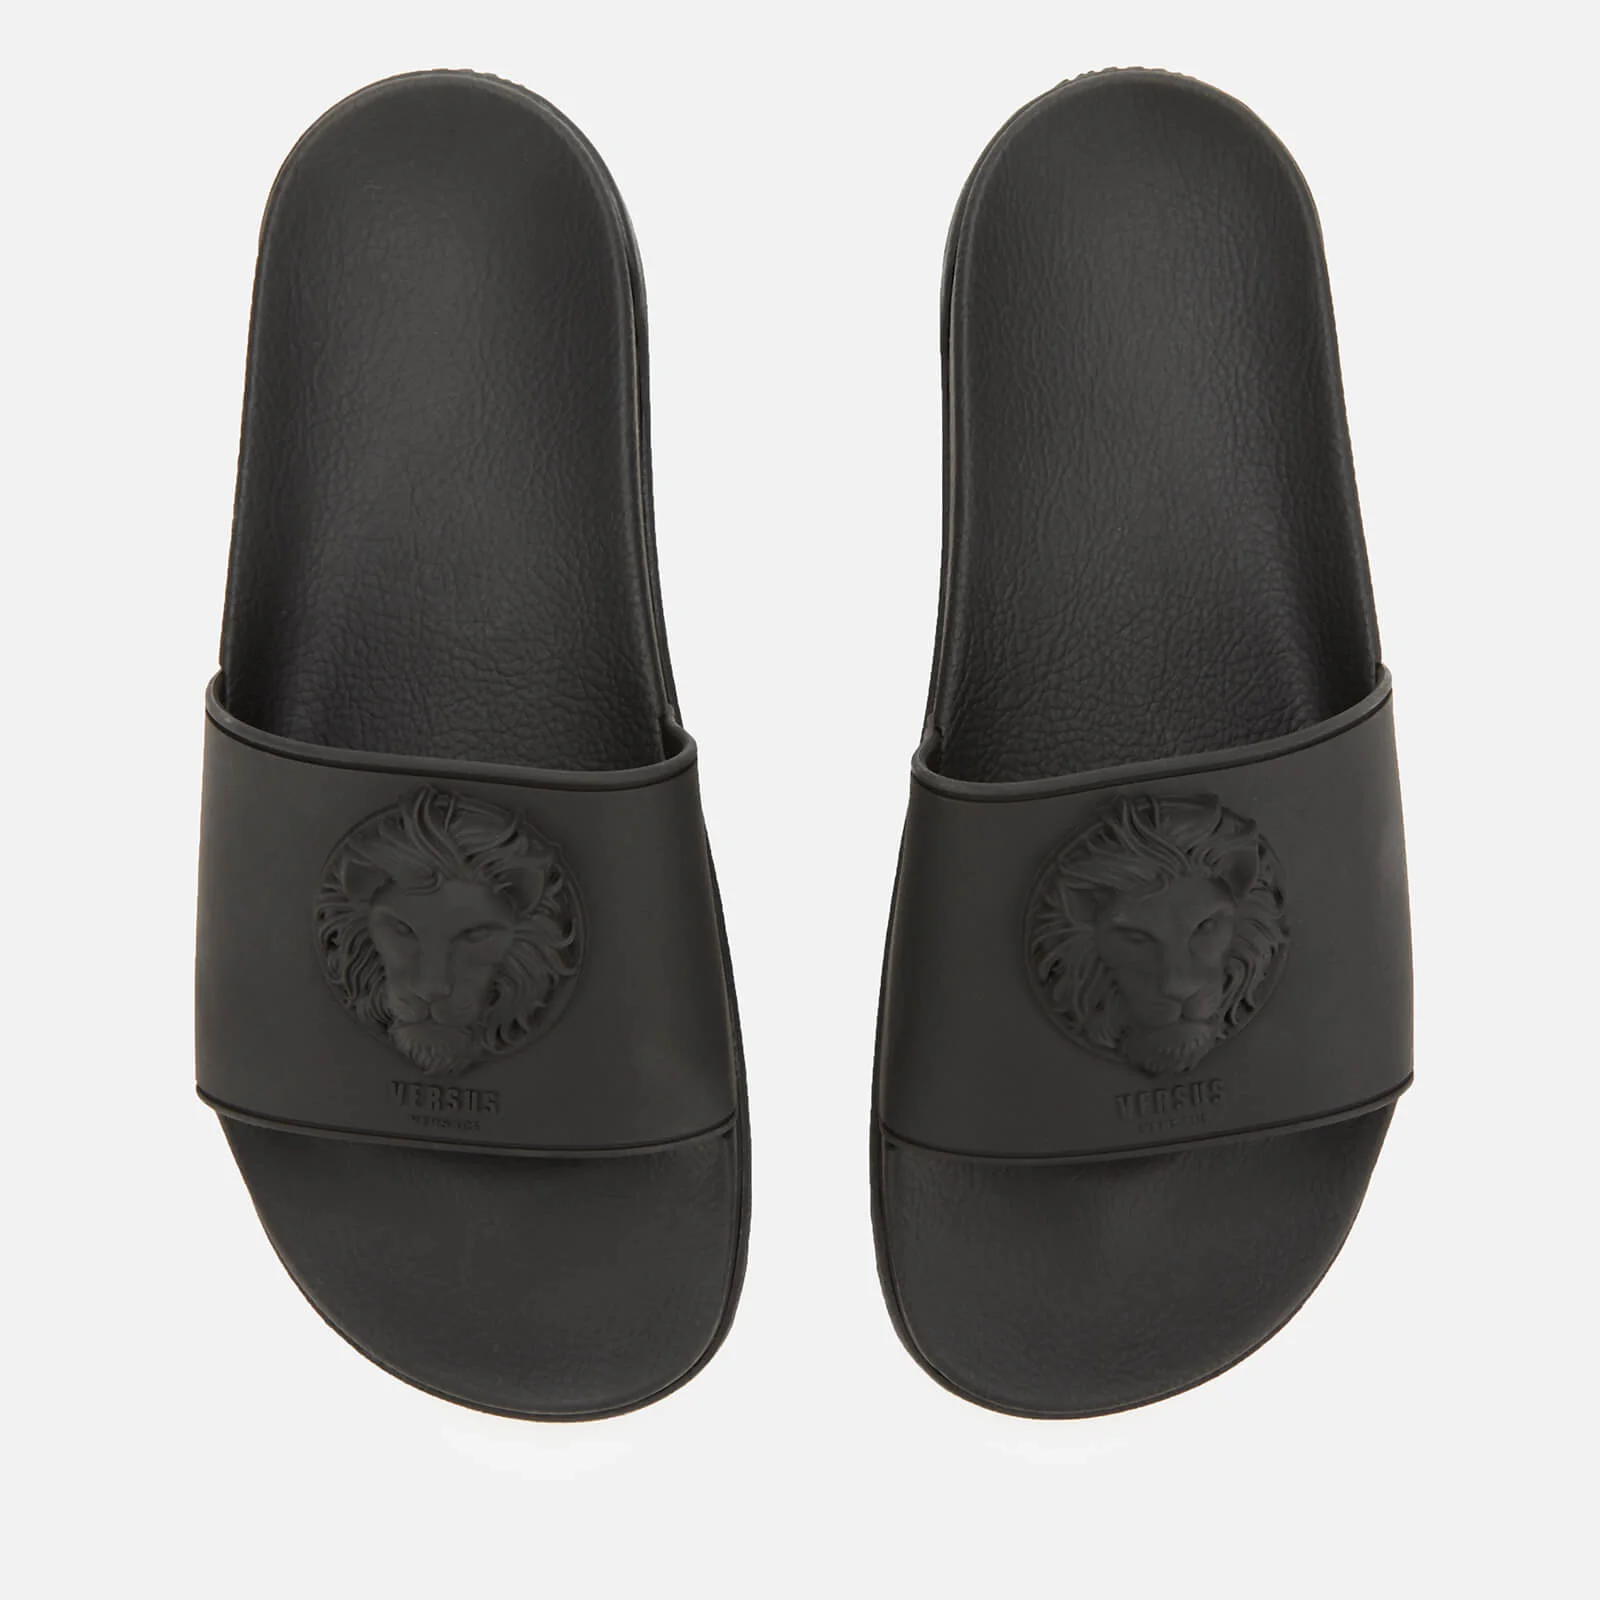 Versus Versace Men's Slide Sandals - Black Image 1